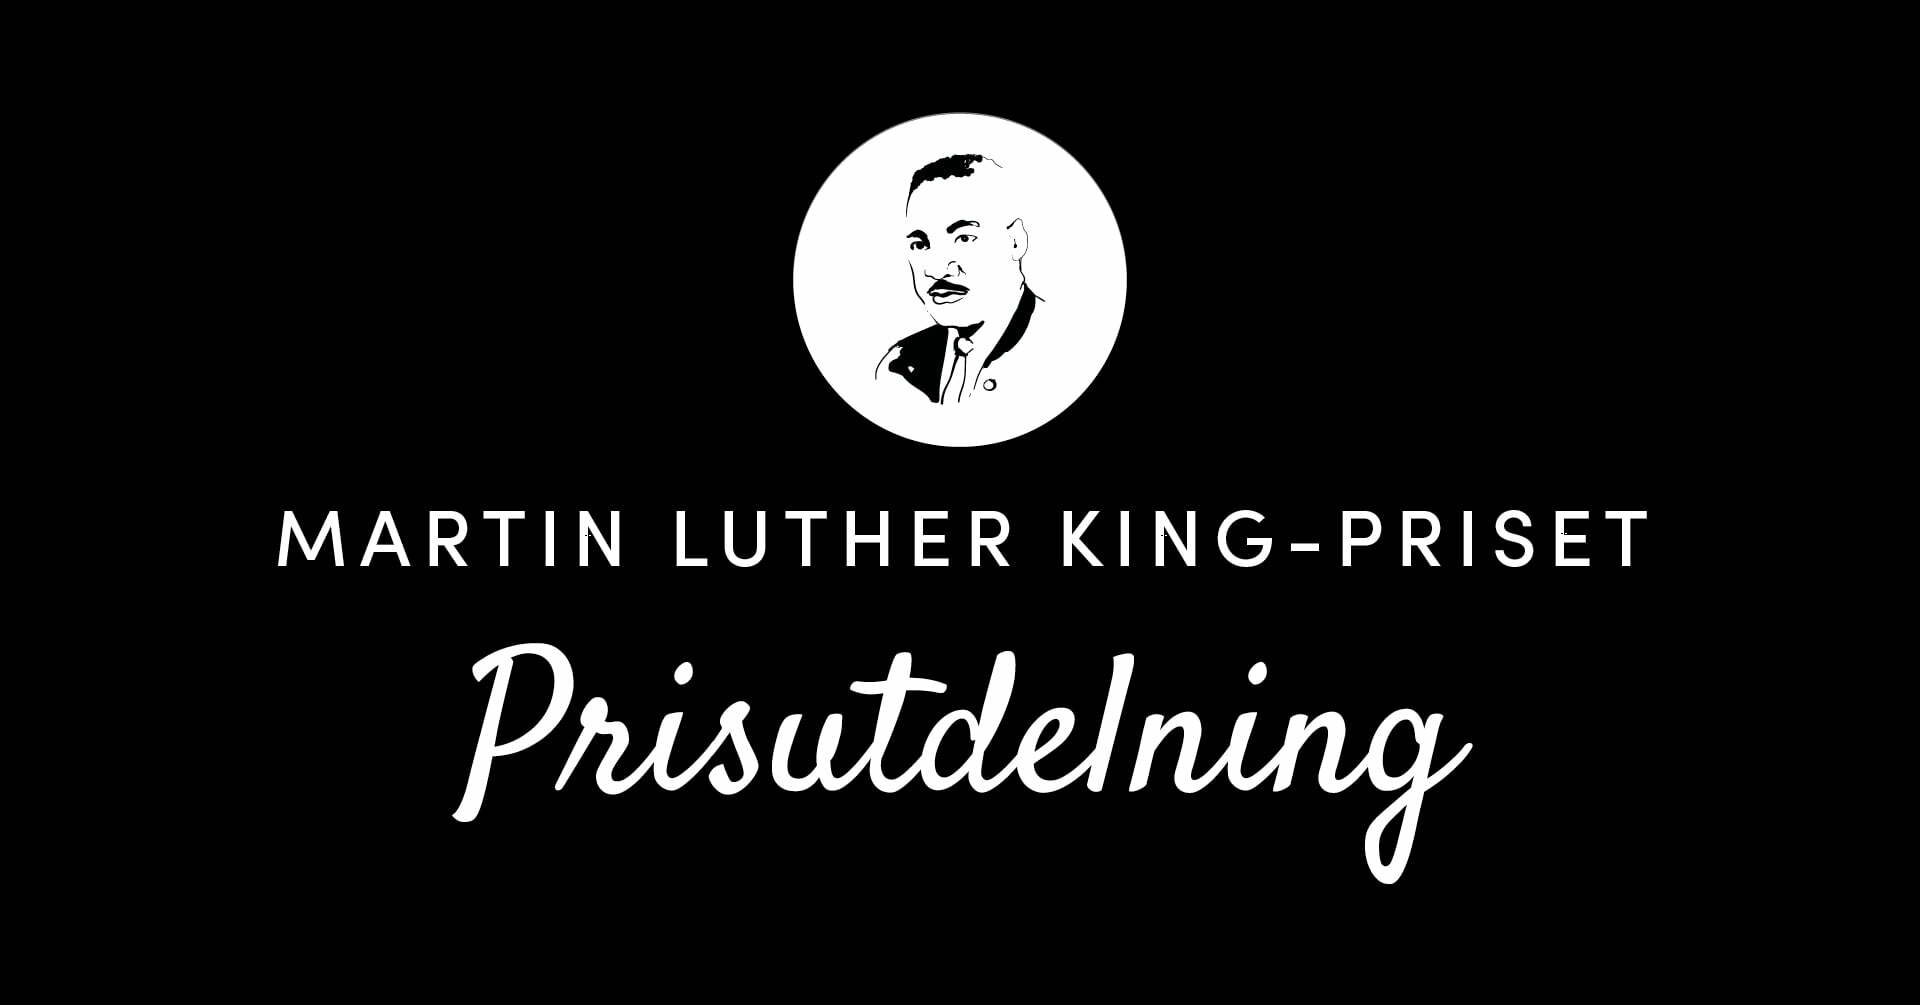 Martin Luther King-priset prisutdelning